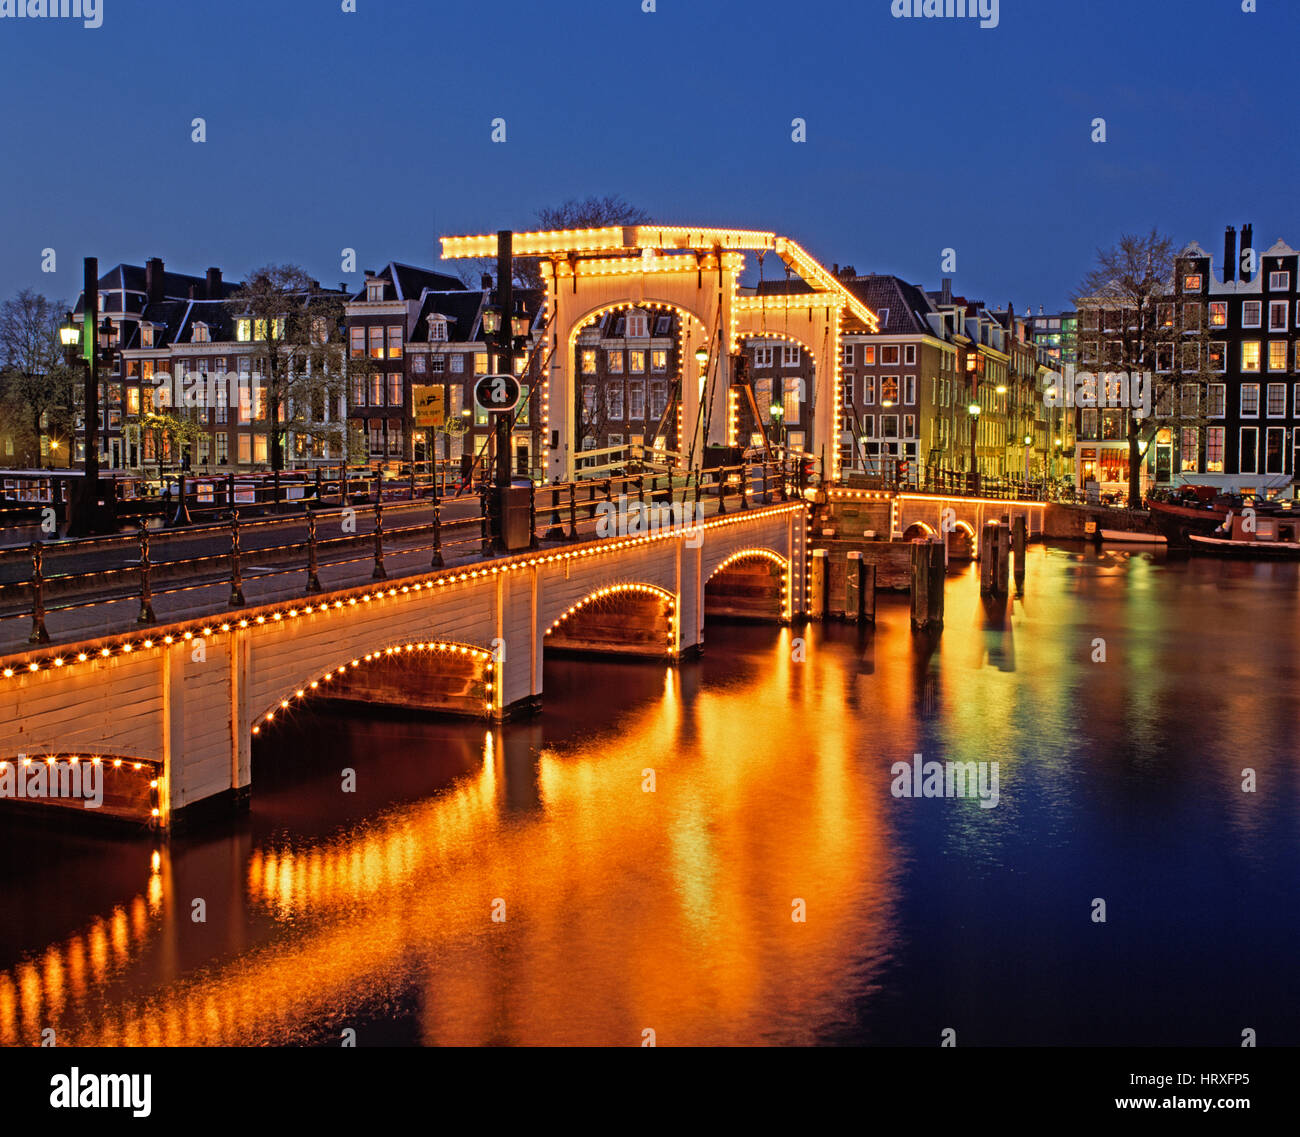 Magere Brug (pont Maigre) se reflétant dans la rivière Amstel la nuit, Amsterdam, Hollande, Pays-Bas Banque D'Images